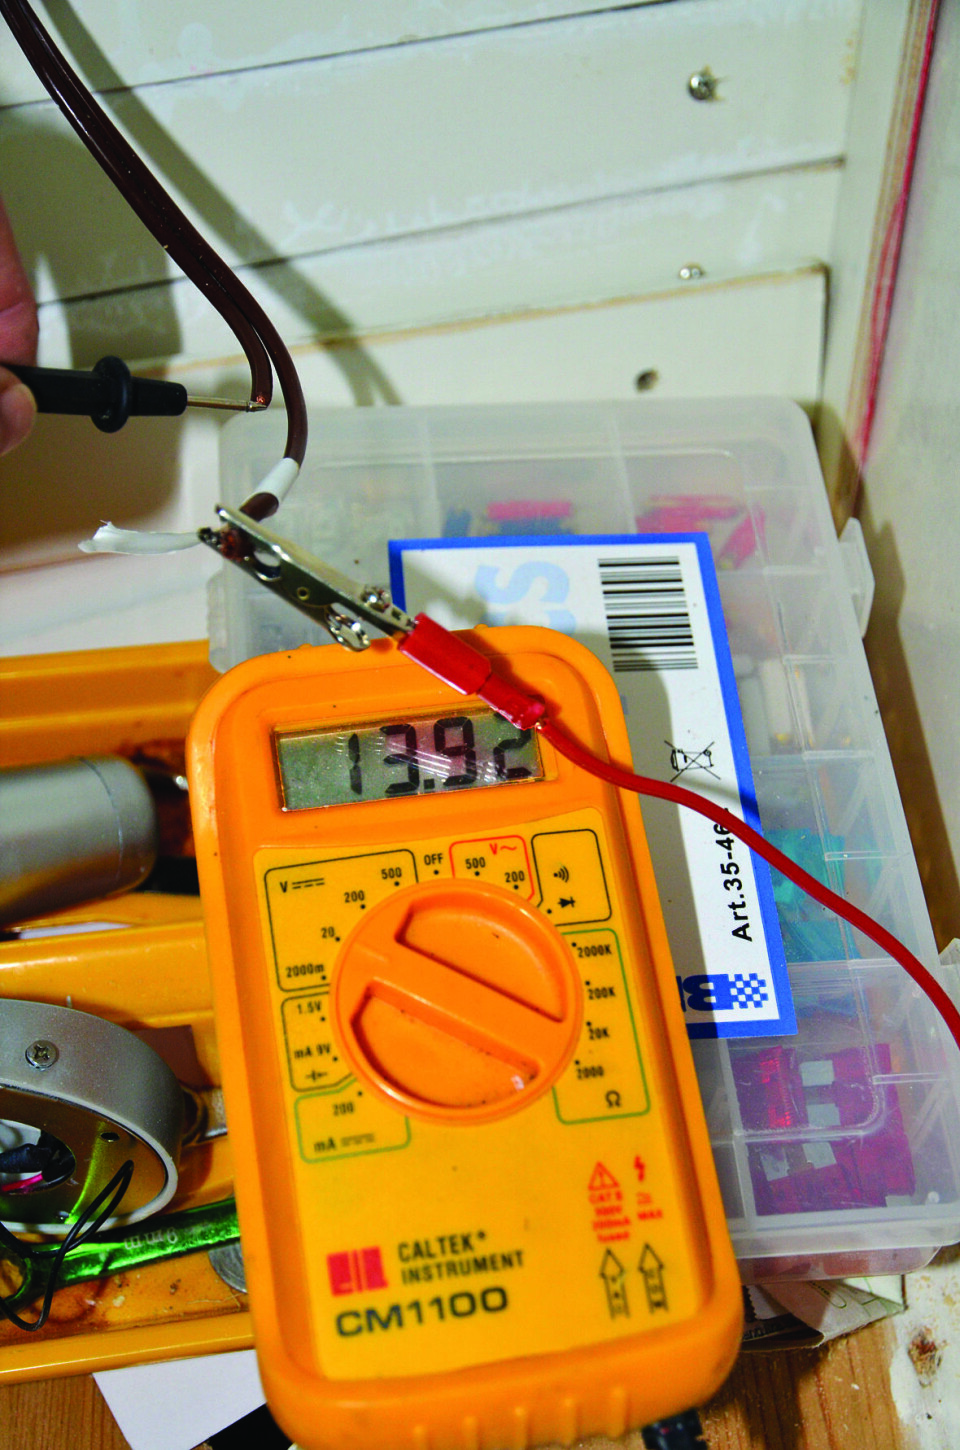 VOLTMETER: Et voltmeter avslører at det er strøm å spare ved å benytte LED-lys om bord.